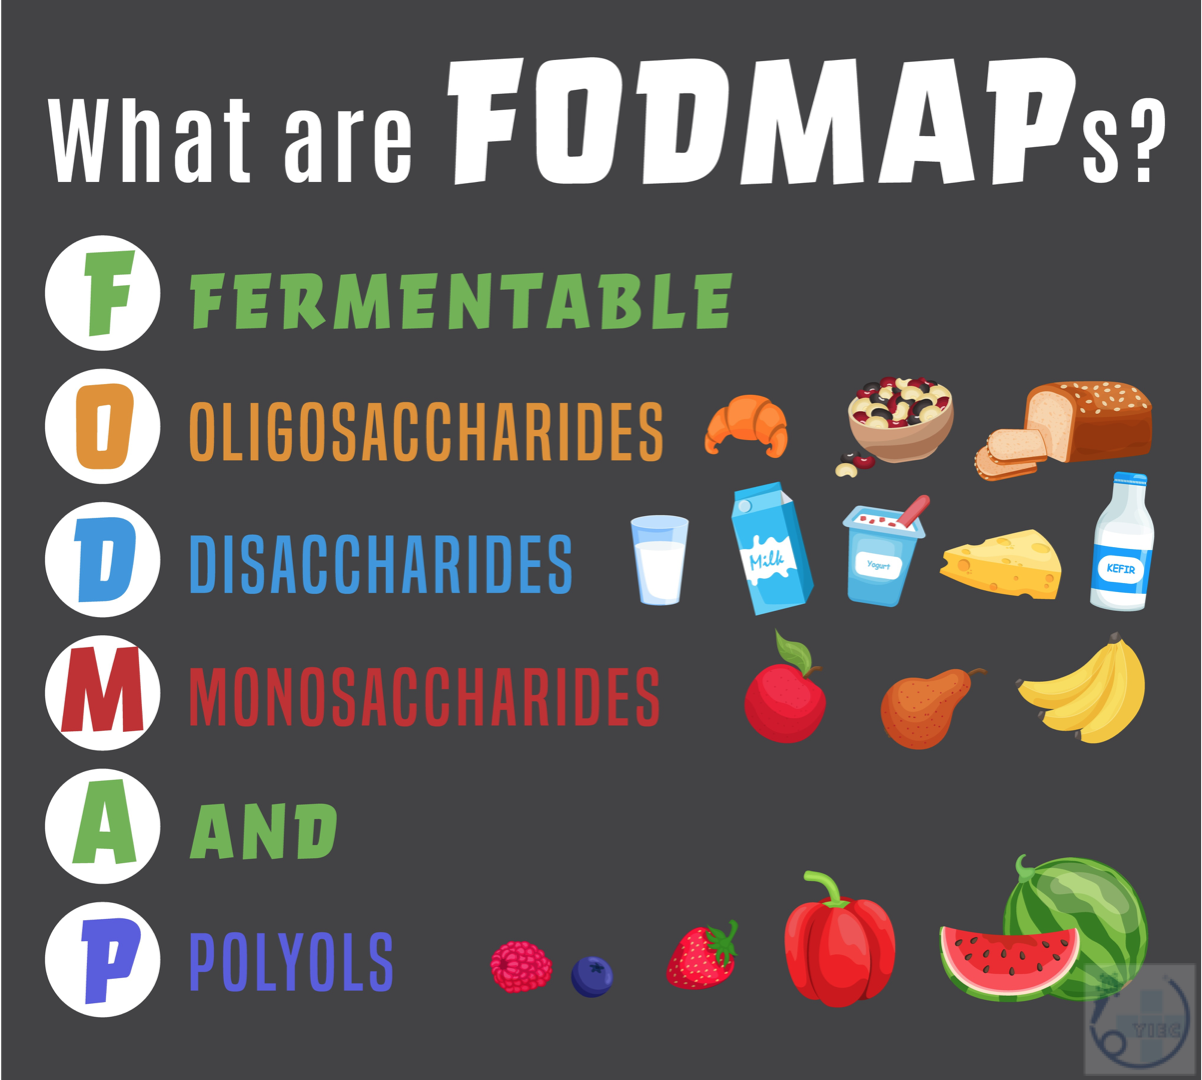 FODMAPを多く含んだ食品や、刺激物や高脂肪の食べ物を控えるようにしましょう。